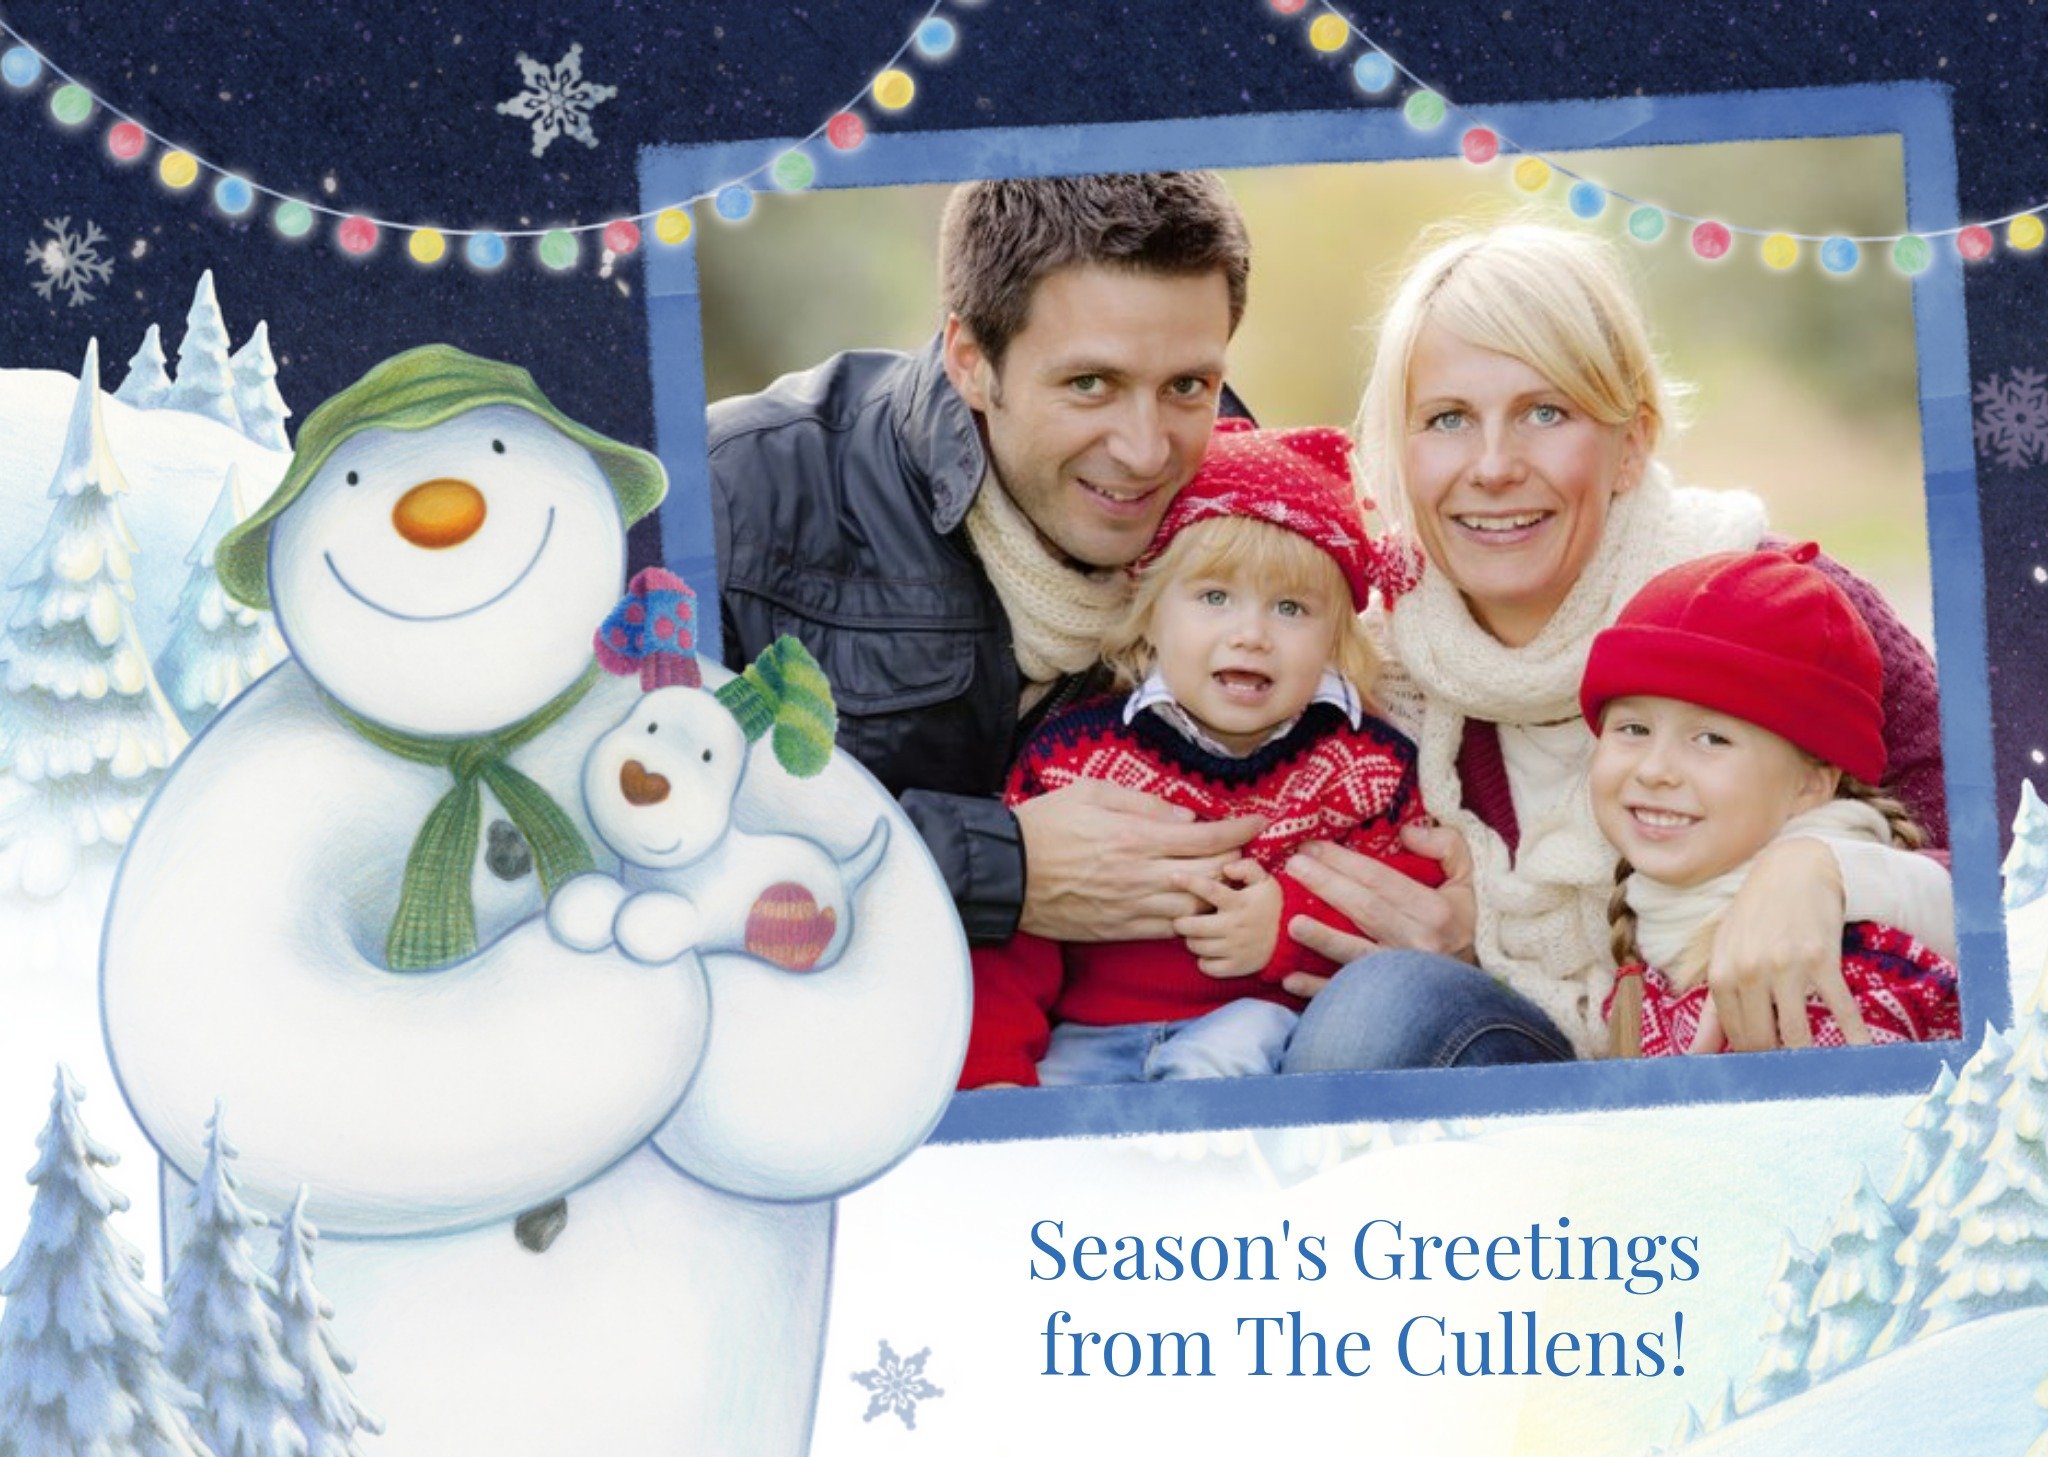 The Snowman Family Christmas Card - Season's Greetings Photo Card Ecard